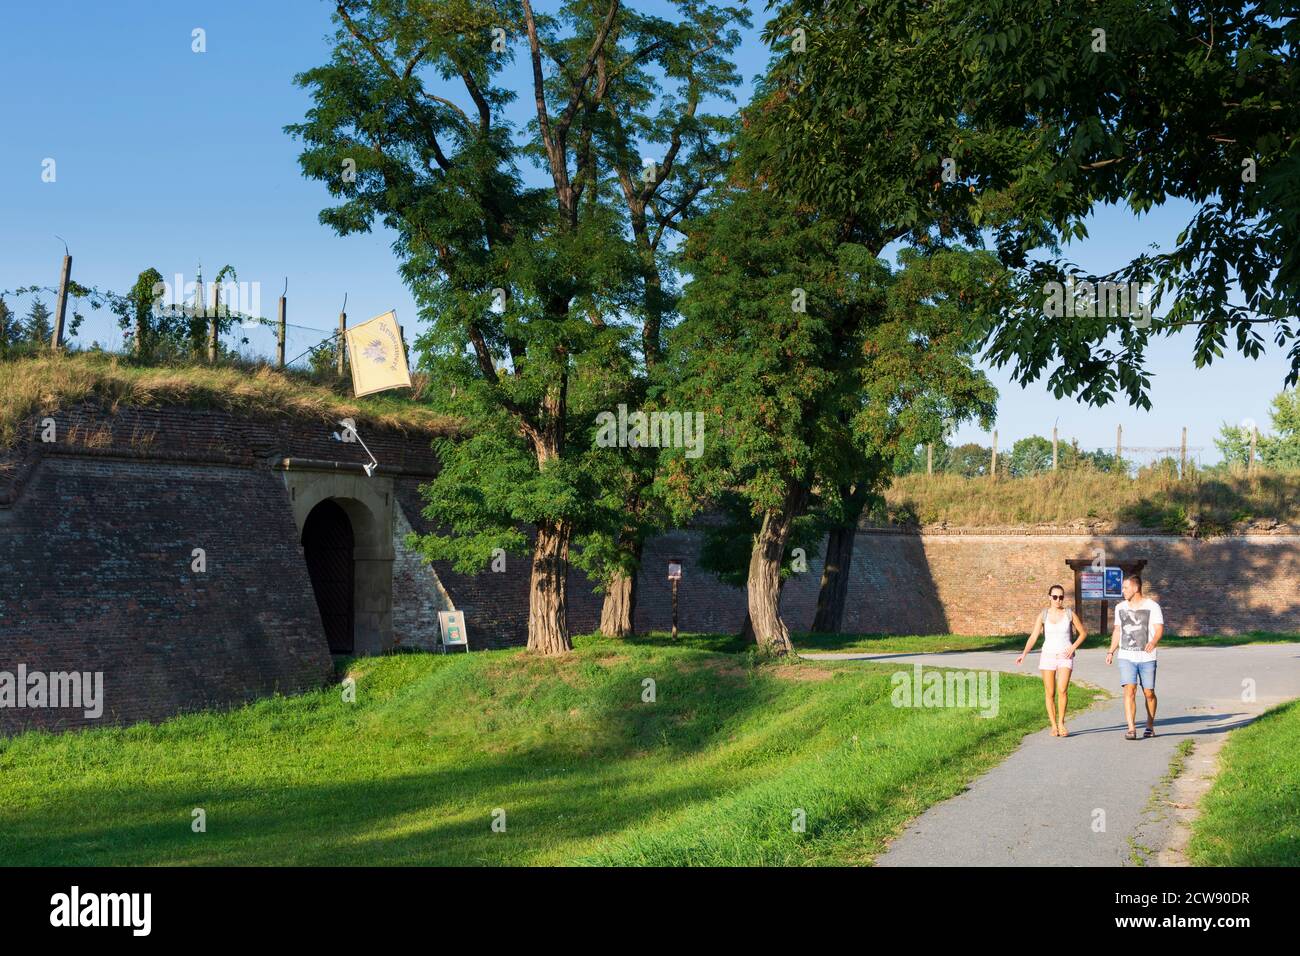 Olomouc (Olmütz): Fortezza della corona nella città vecchia, Olomoucky, regione di Olmützer, Olomouc, ceco Foto Stock